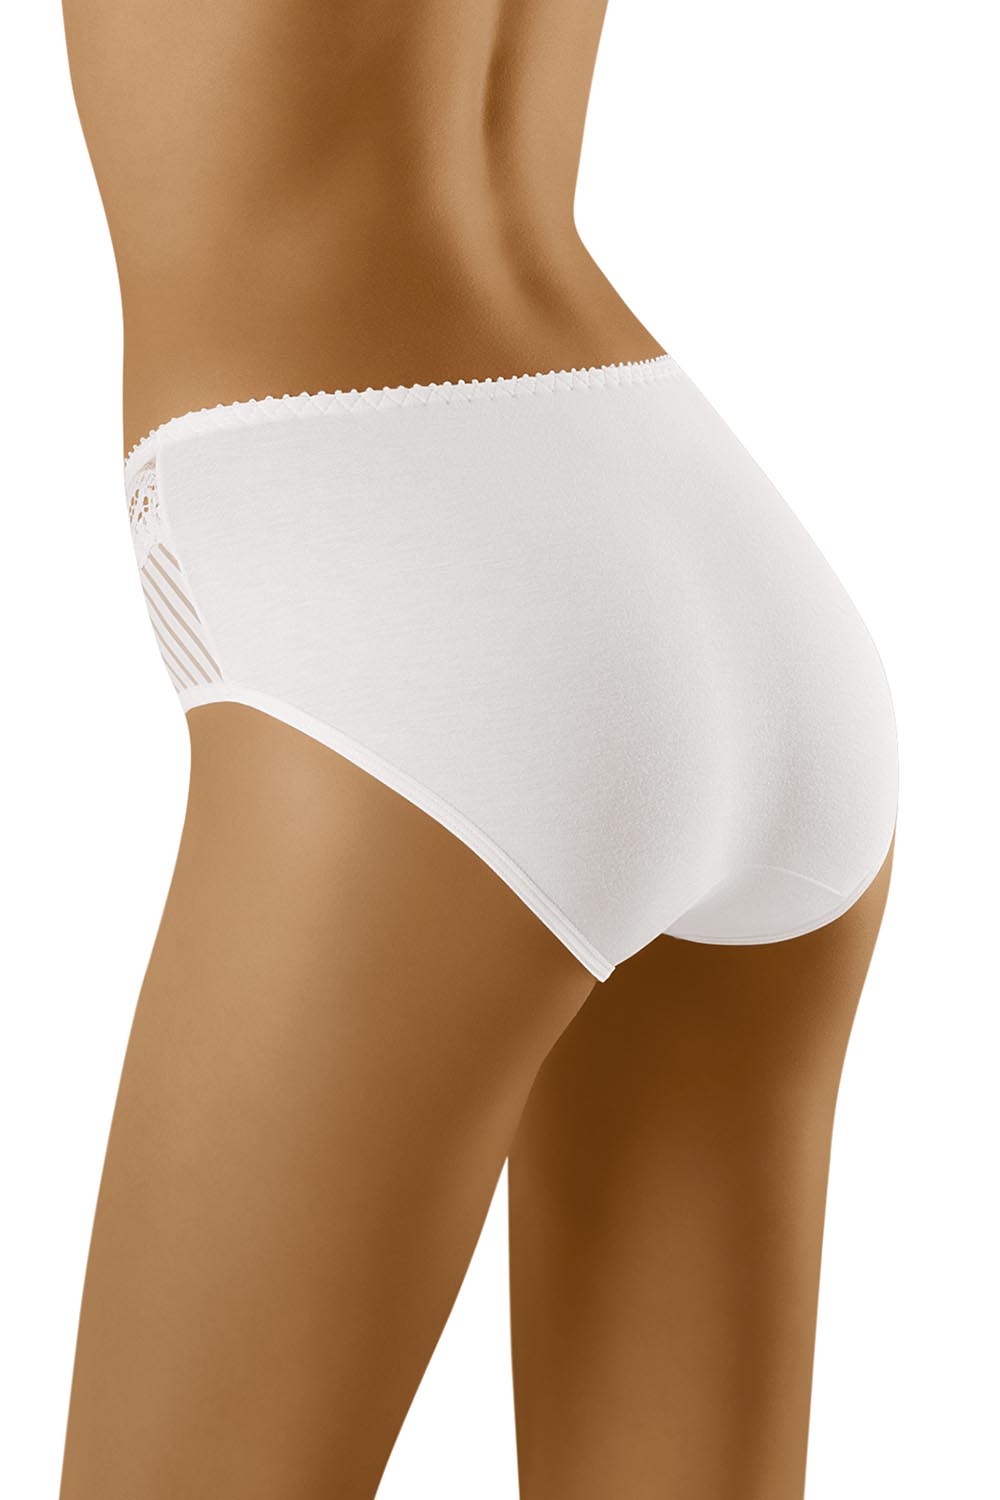 Panties model 129508 Wolbar white Ladies